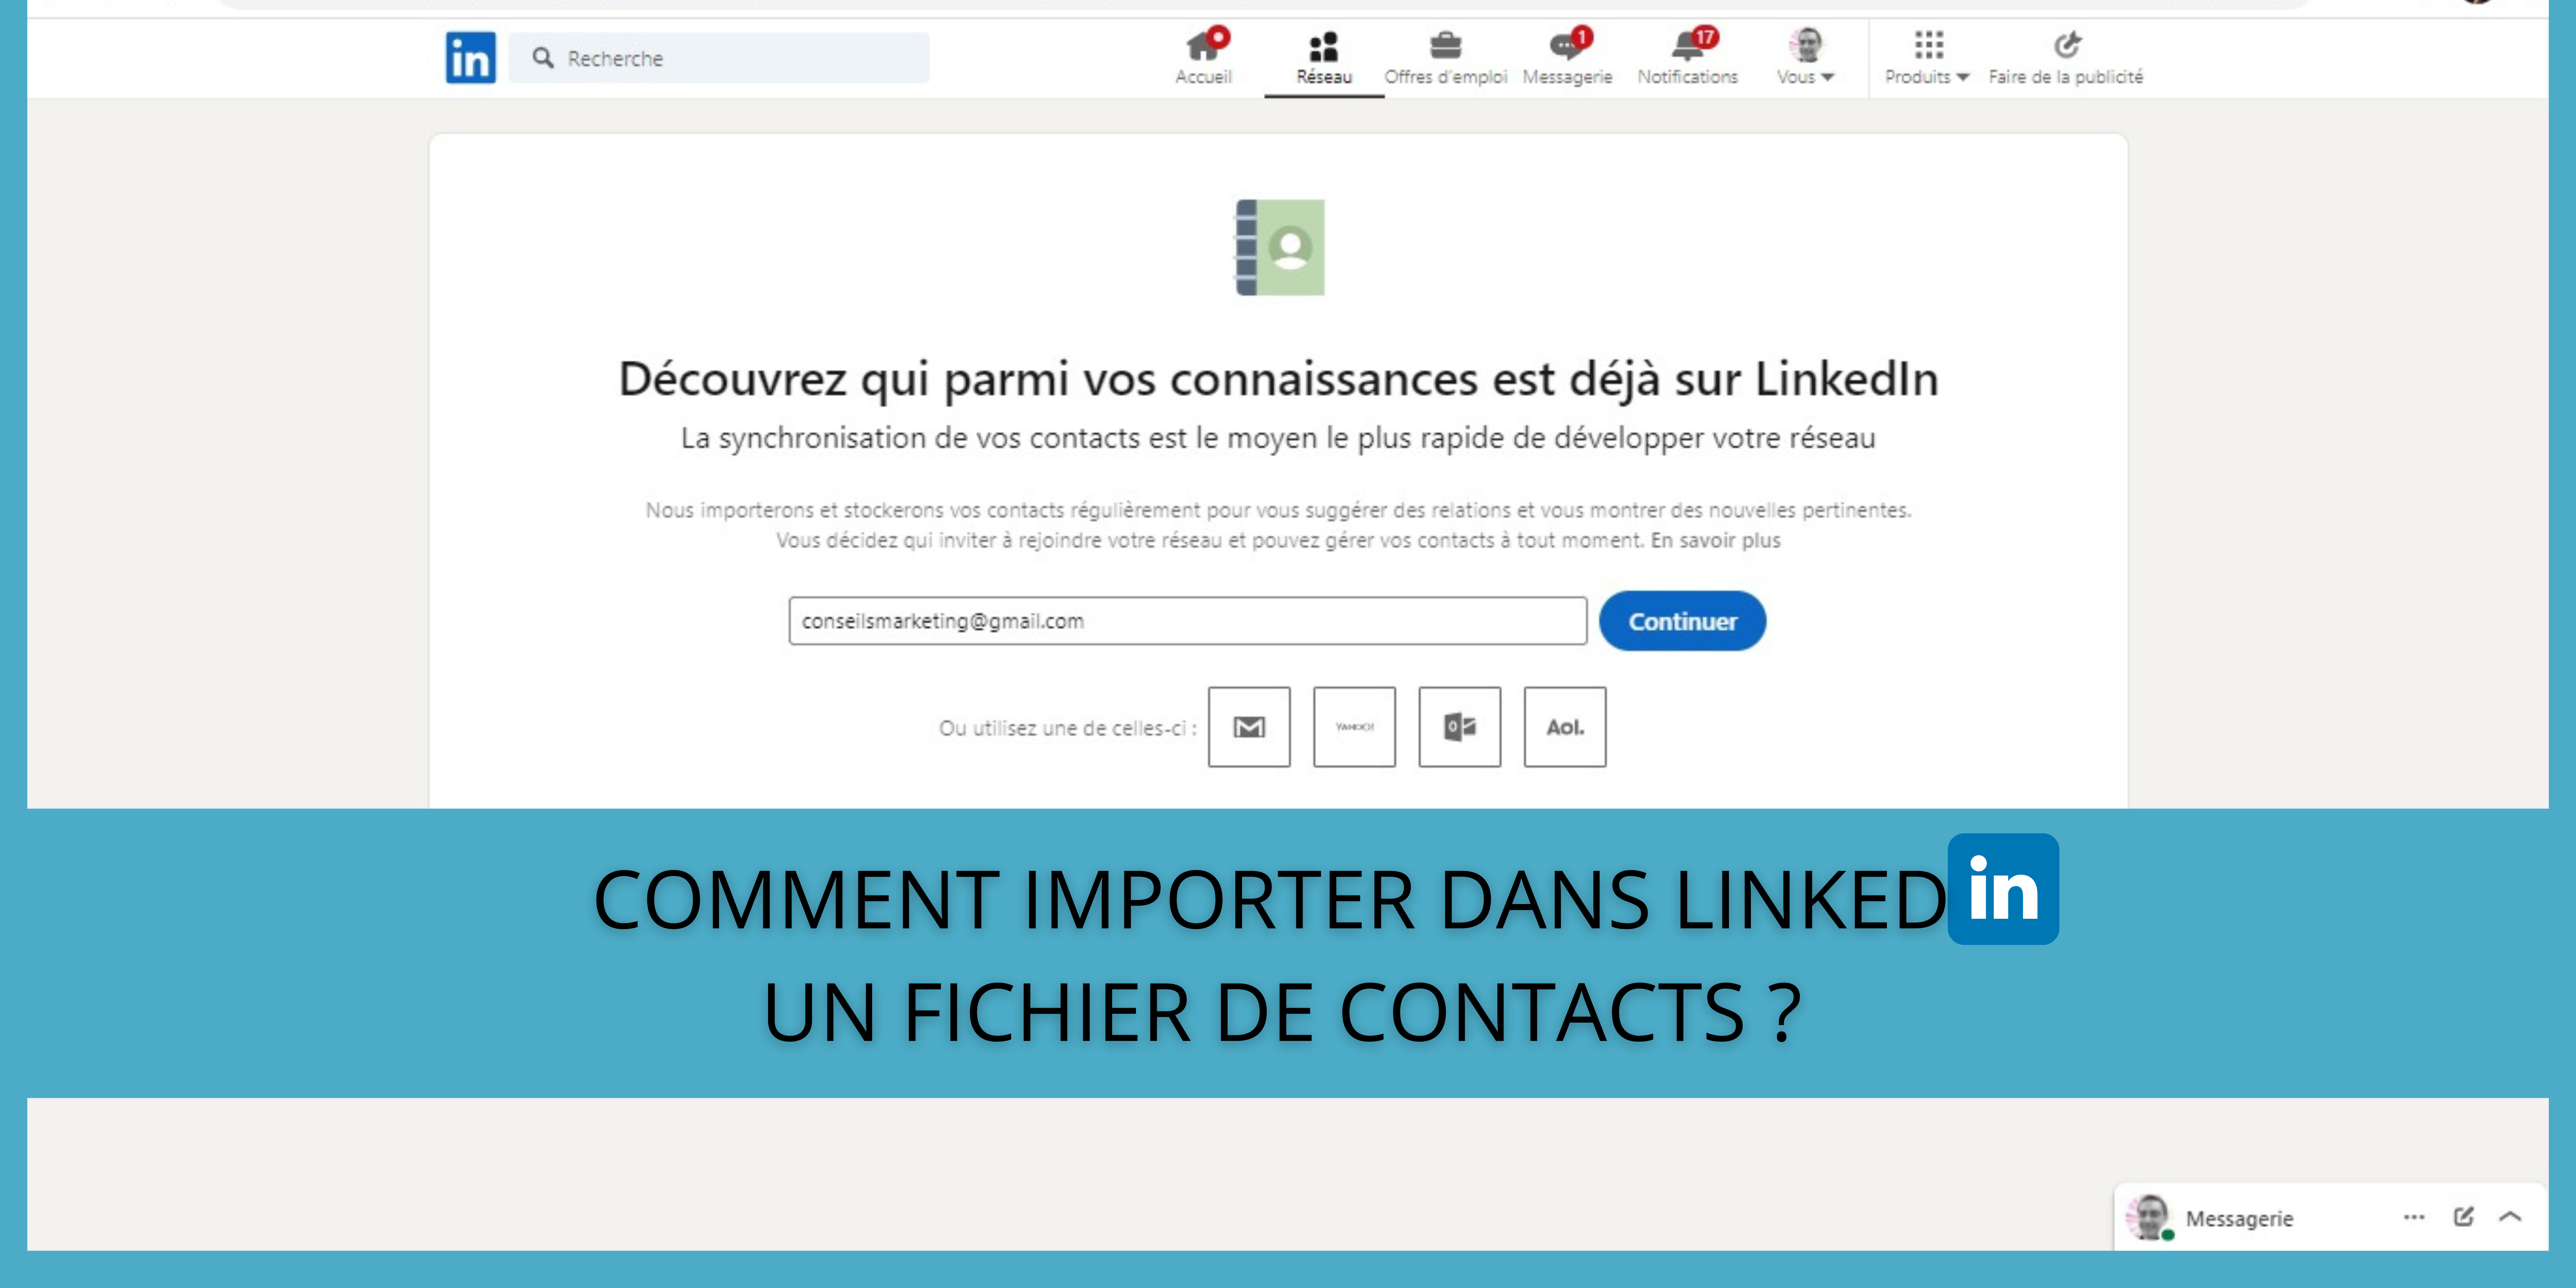 Comment importer dans LinkedIn un fichier de contacts ? 163